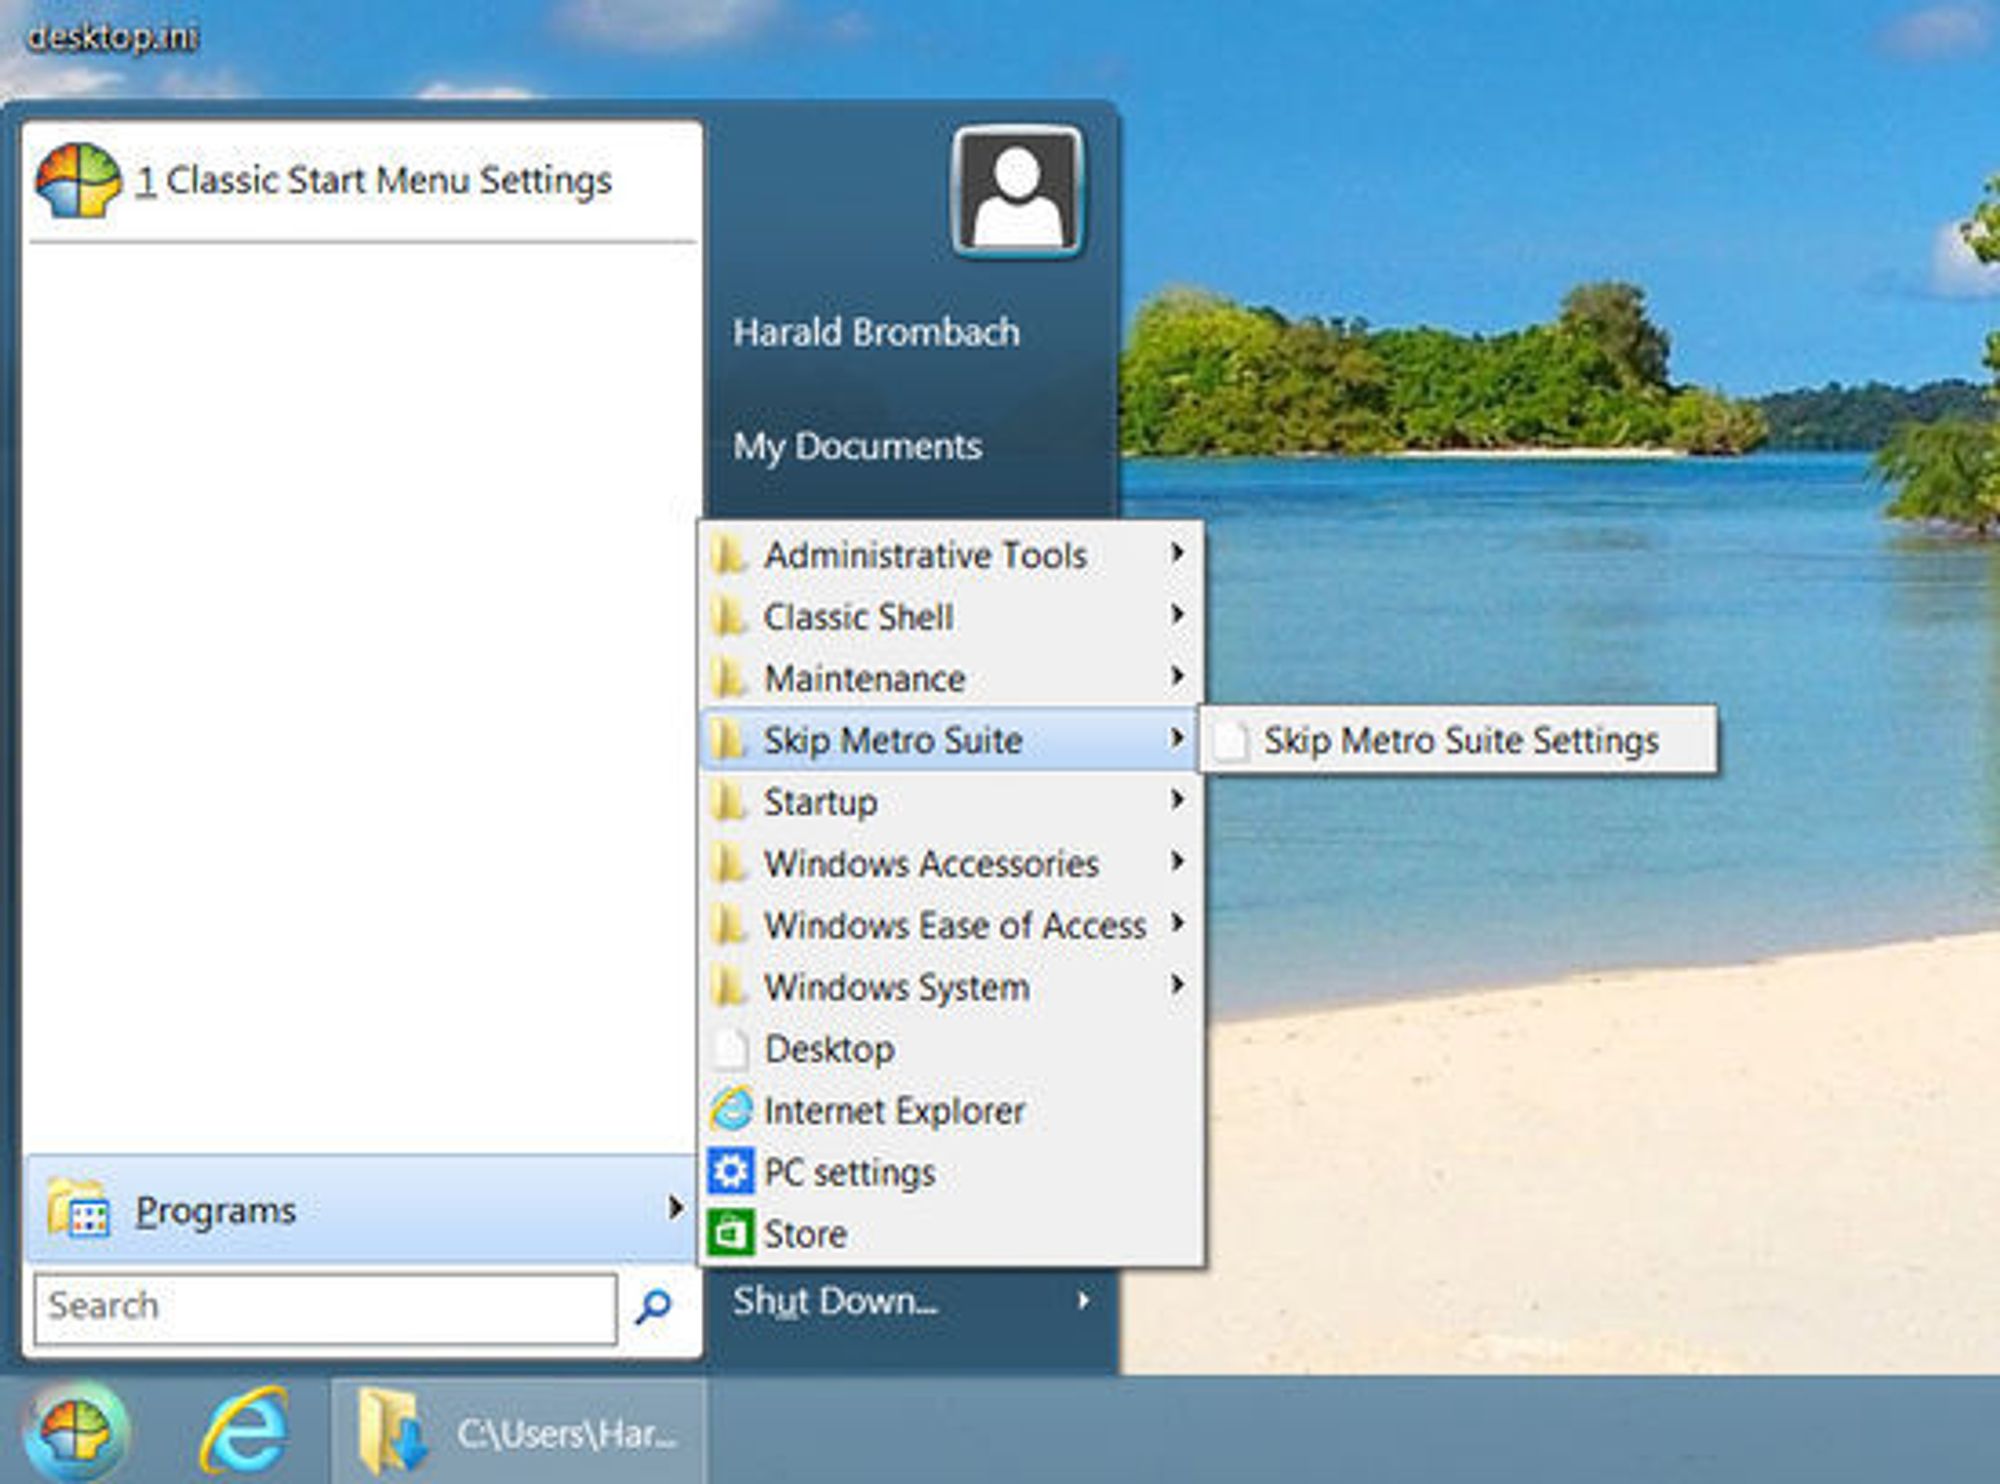 Windows 8 med en klassisk startmeny, muliggjort med tredjepartsapplikasjonen Classic Shell.